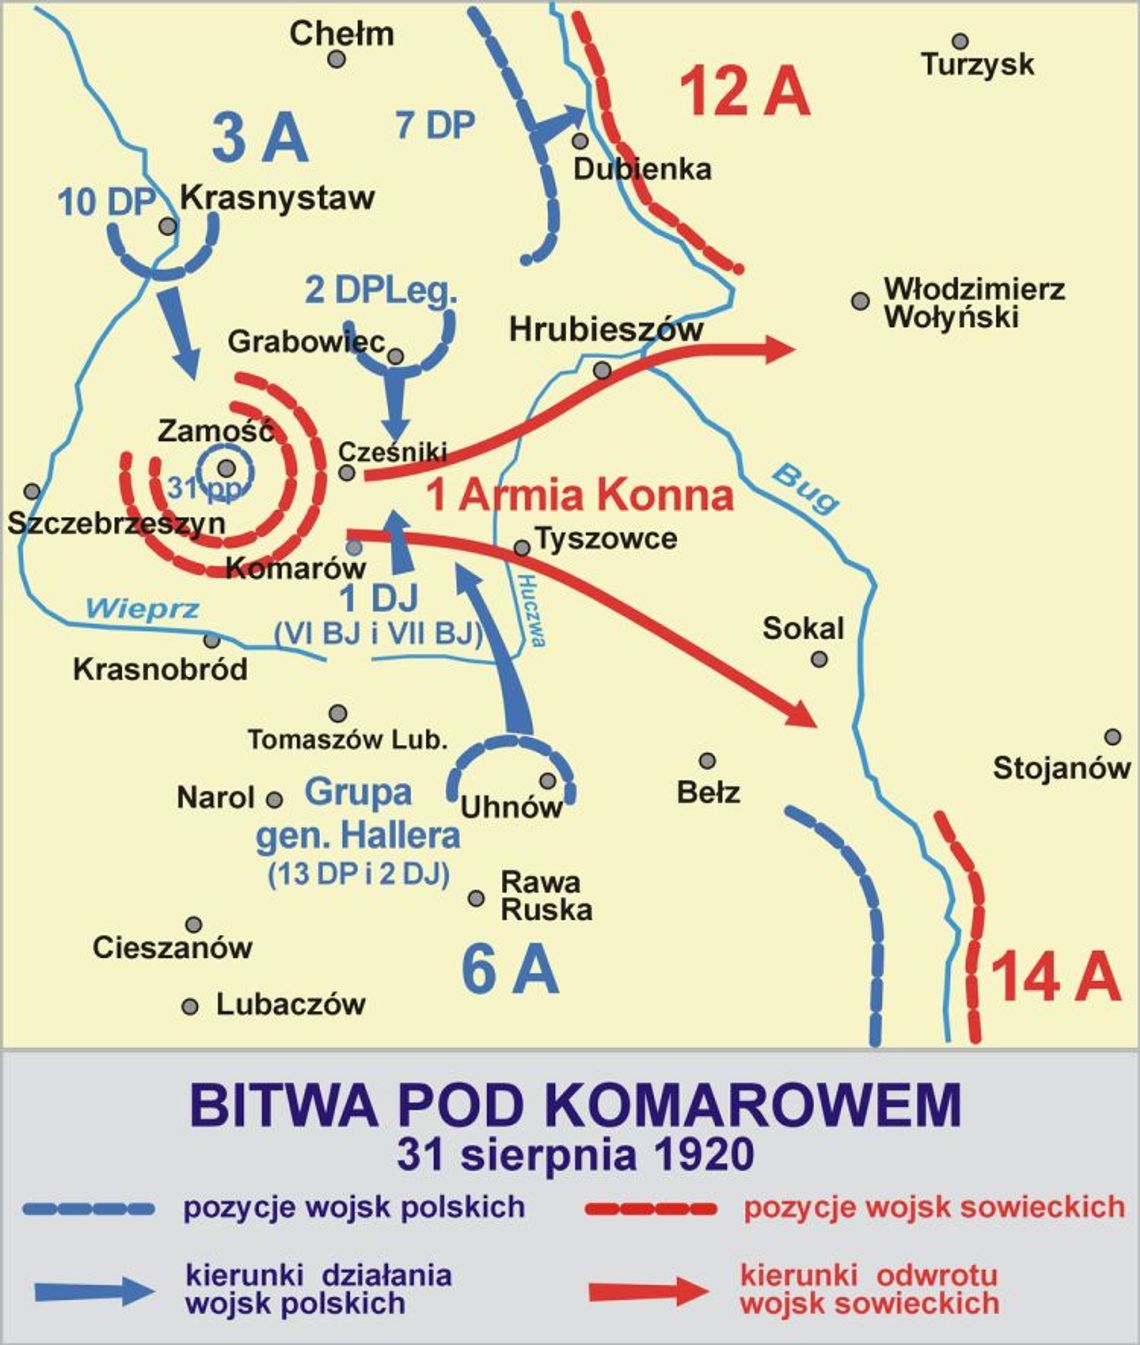 Bitwa pod Komarowem 2018